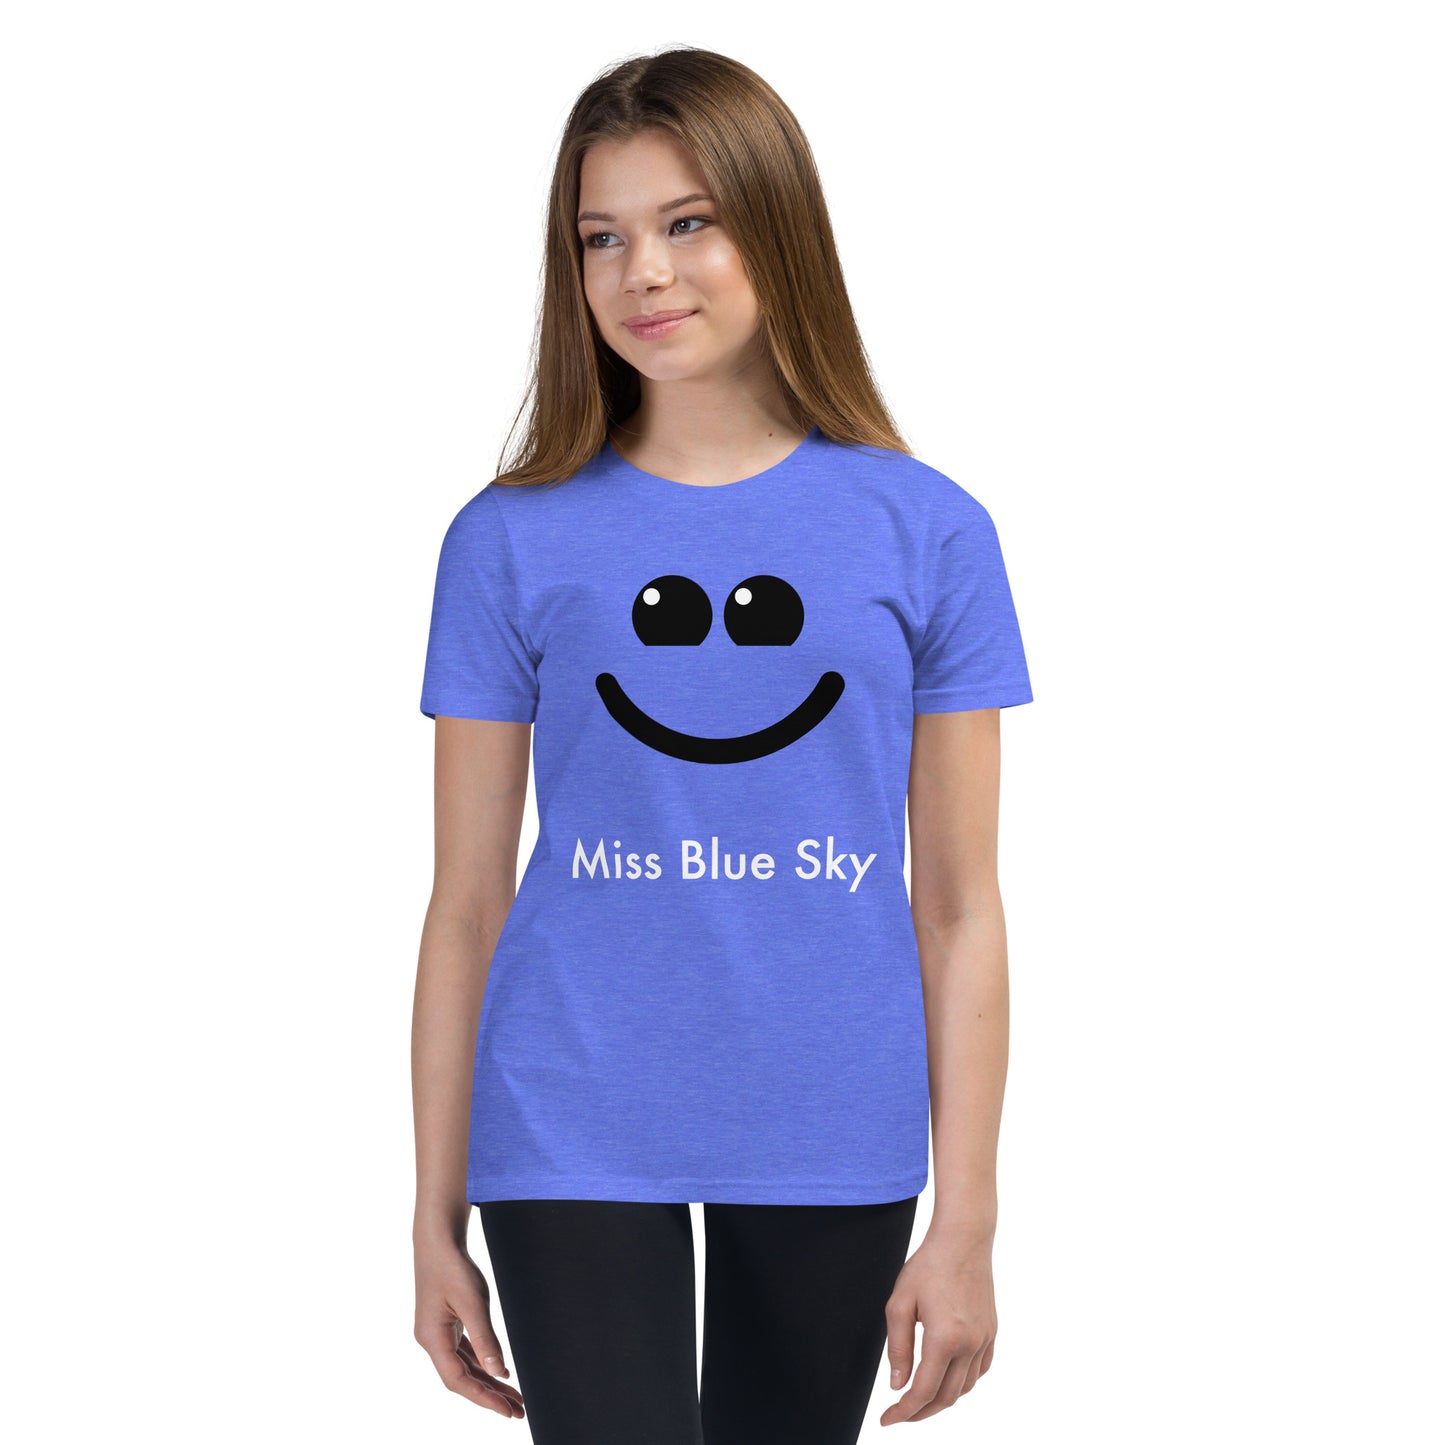 Kids - Miss Blue Sky - Short Sleeve T-Shirt